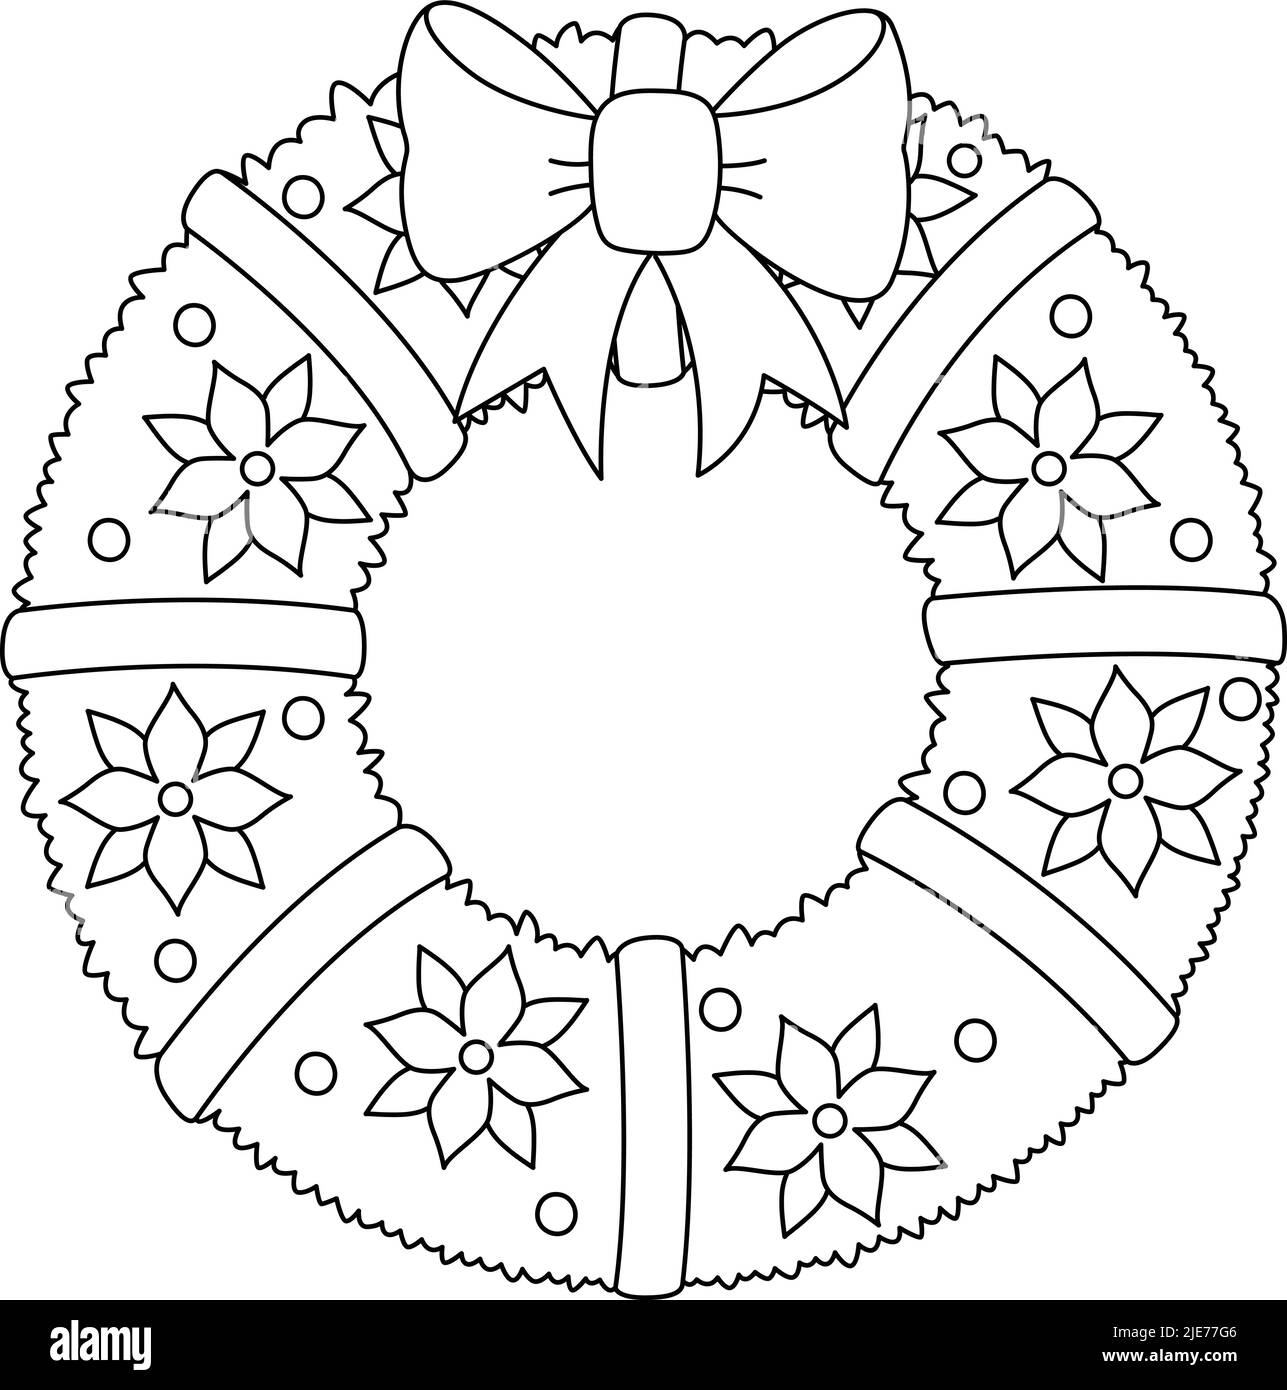 Corona de navidad Imágenes de stock en blanco y negro - Alamy